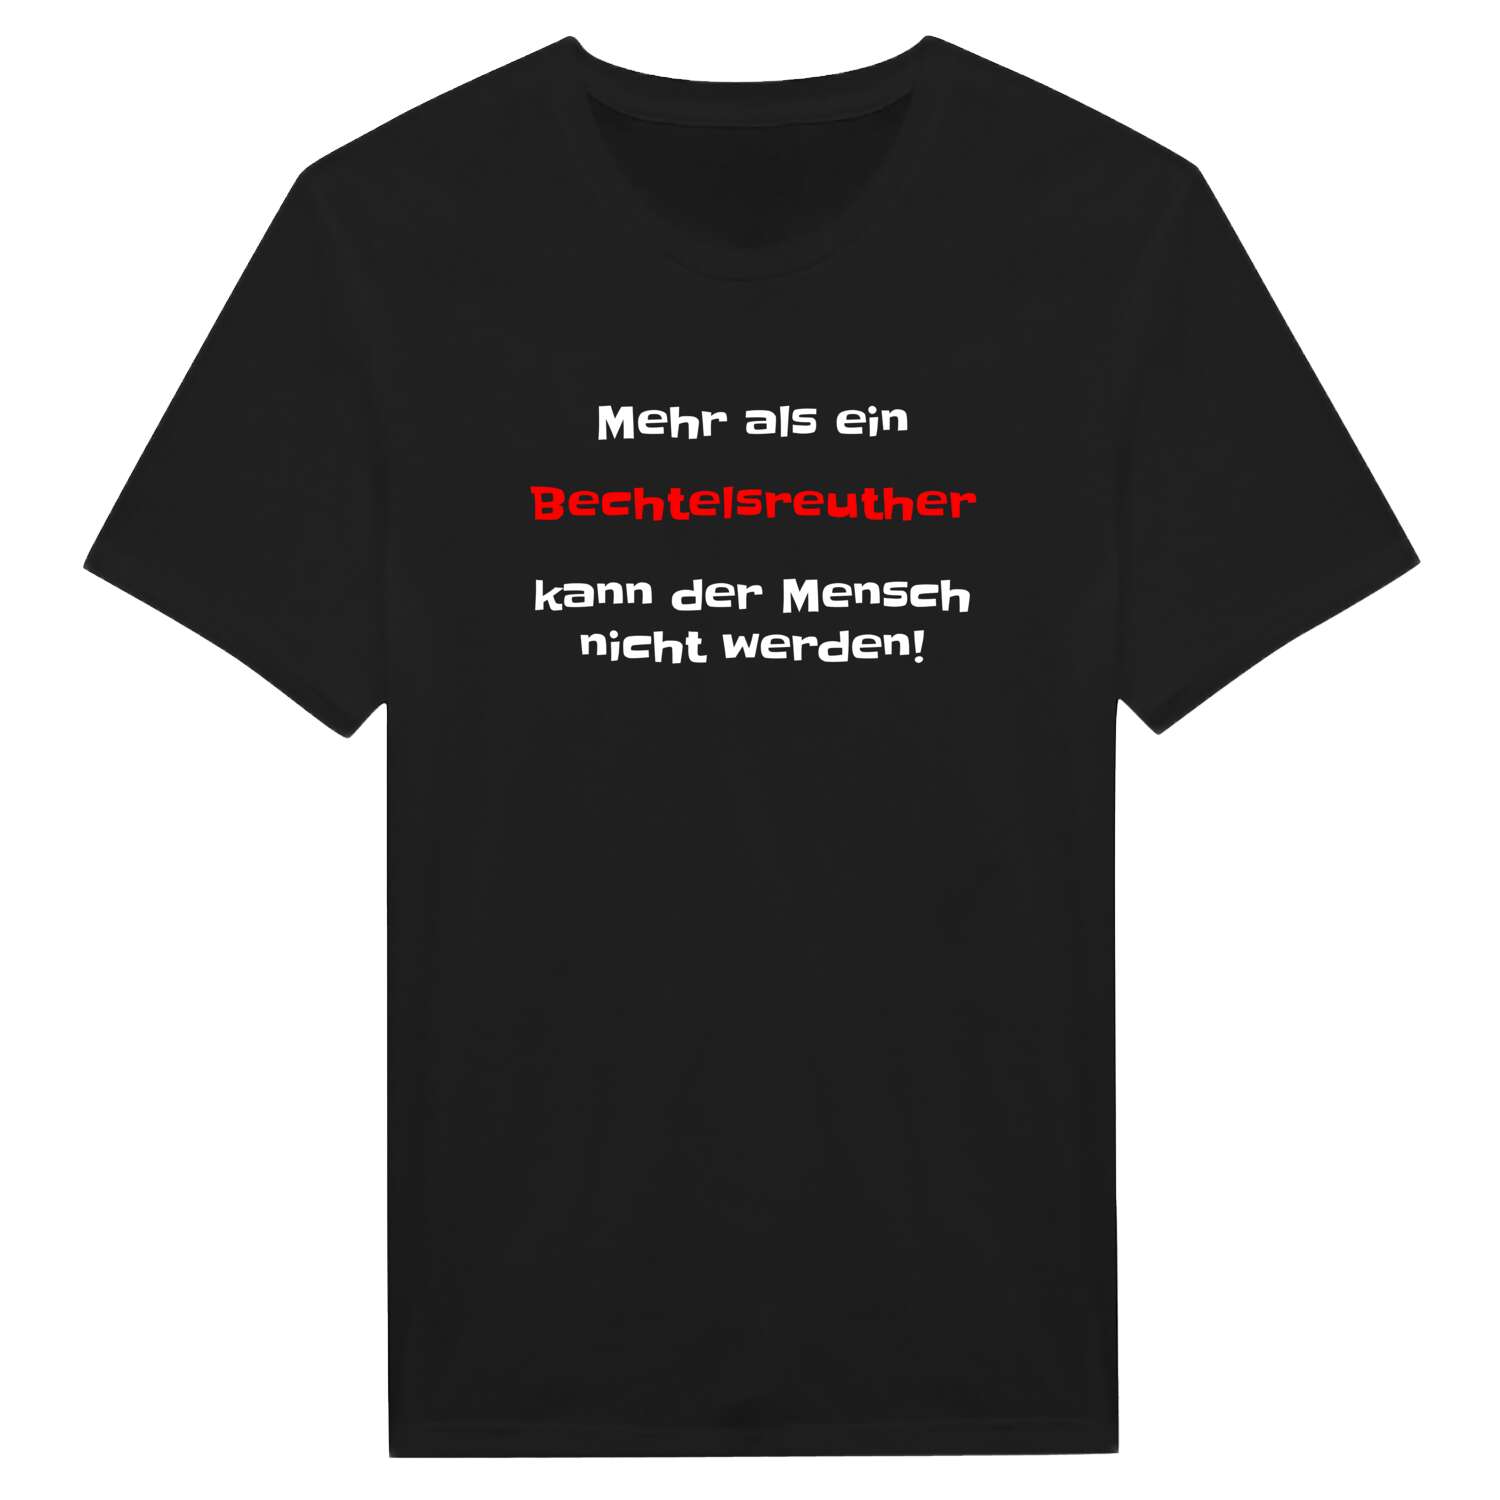 Bechtelsreuth T-Shirt »Mehr als ein«